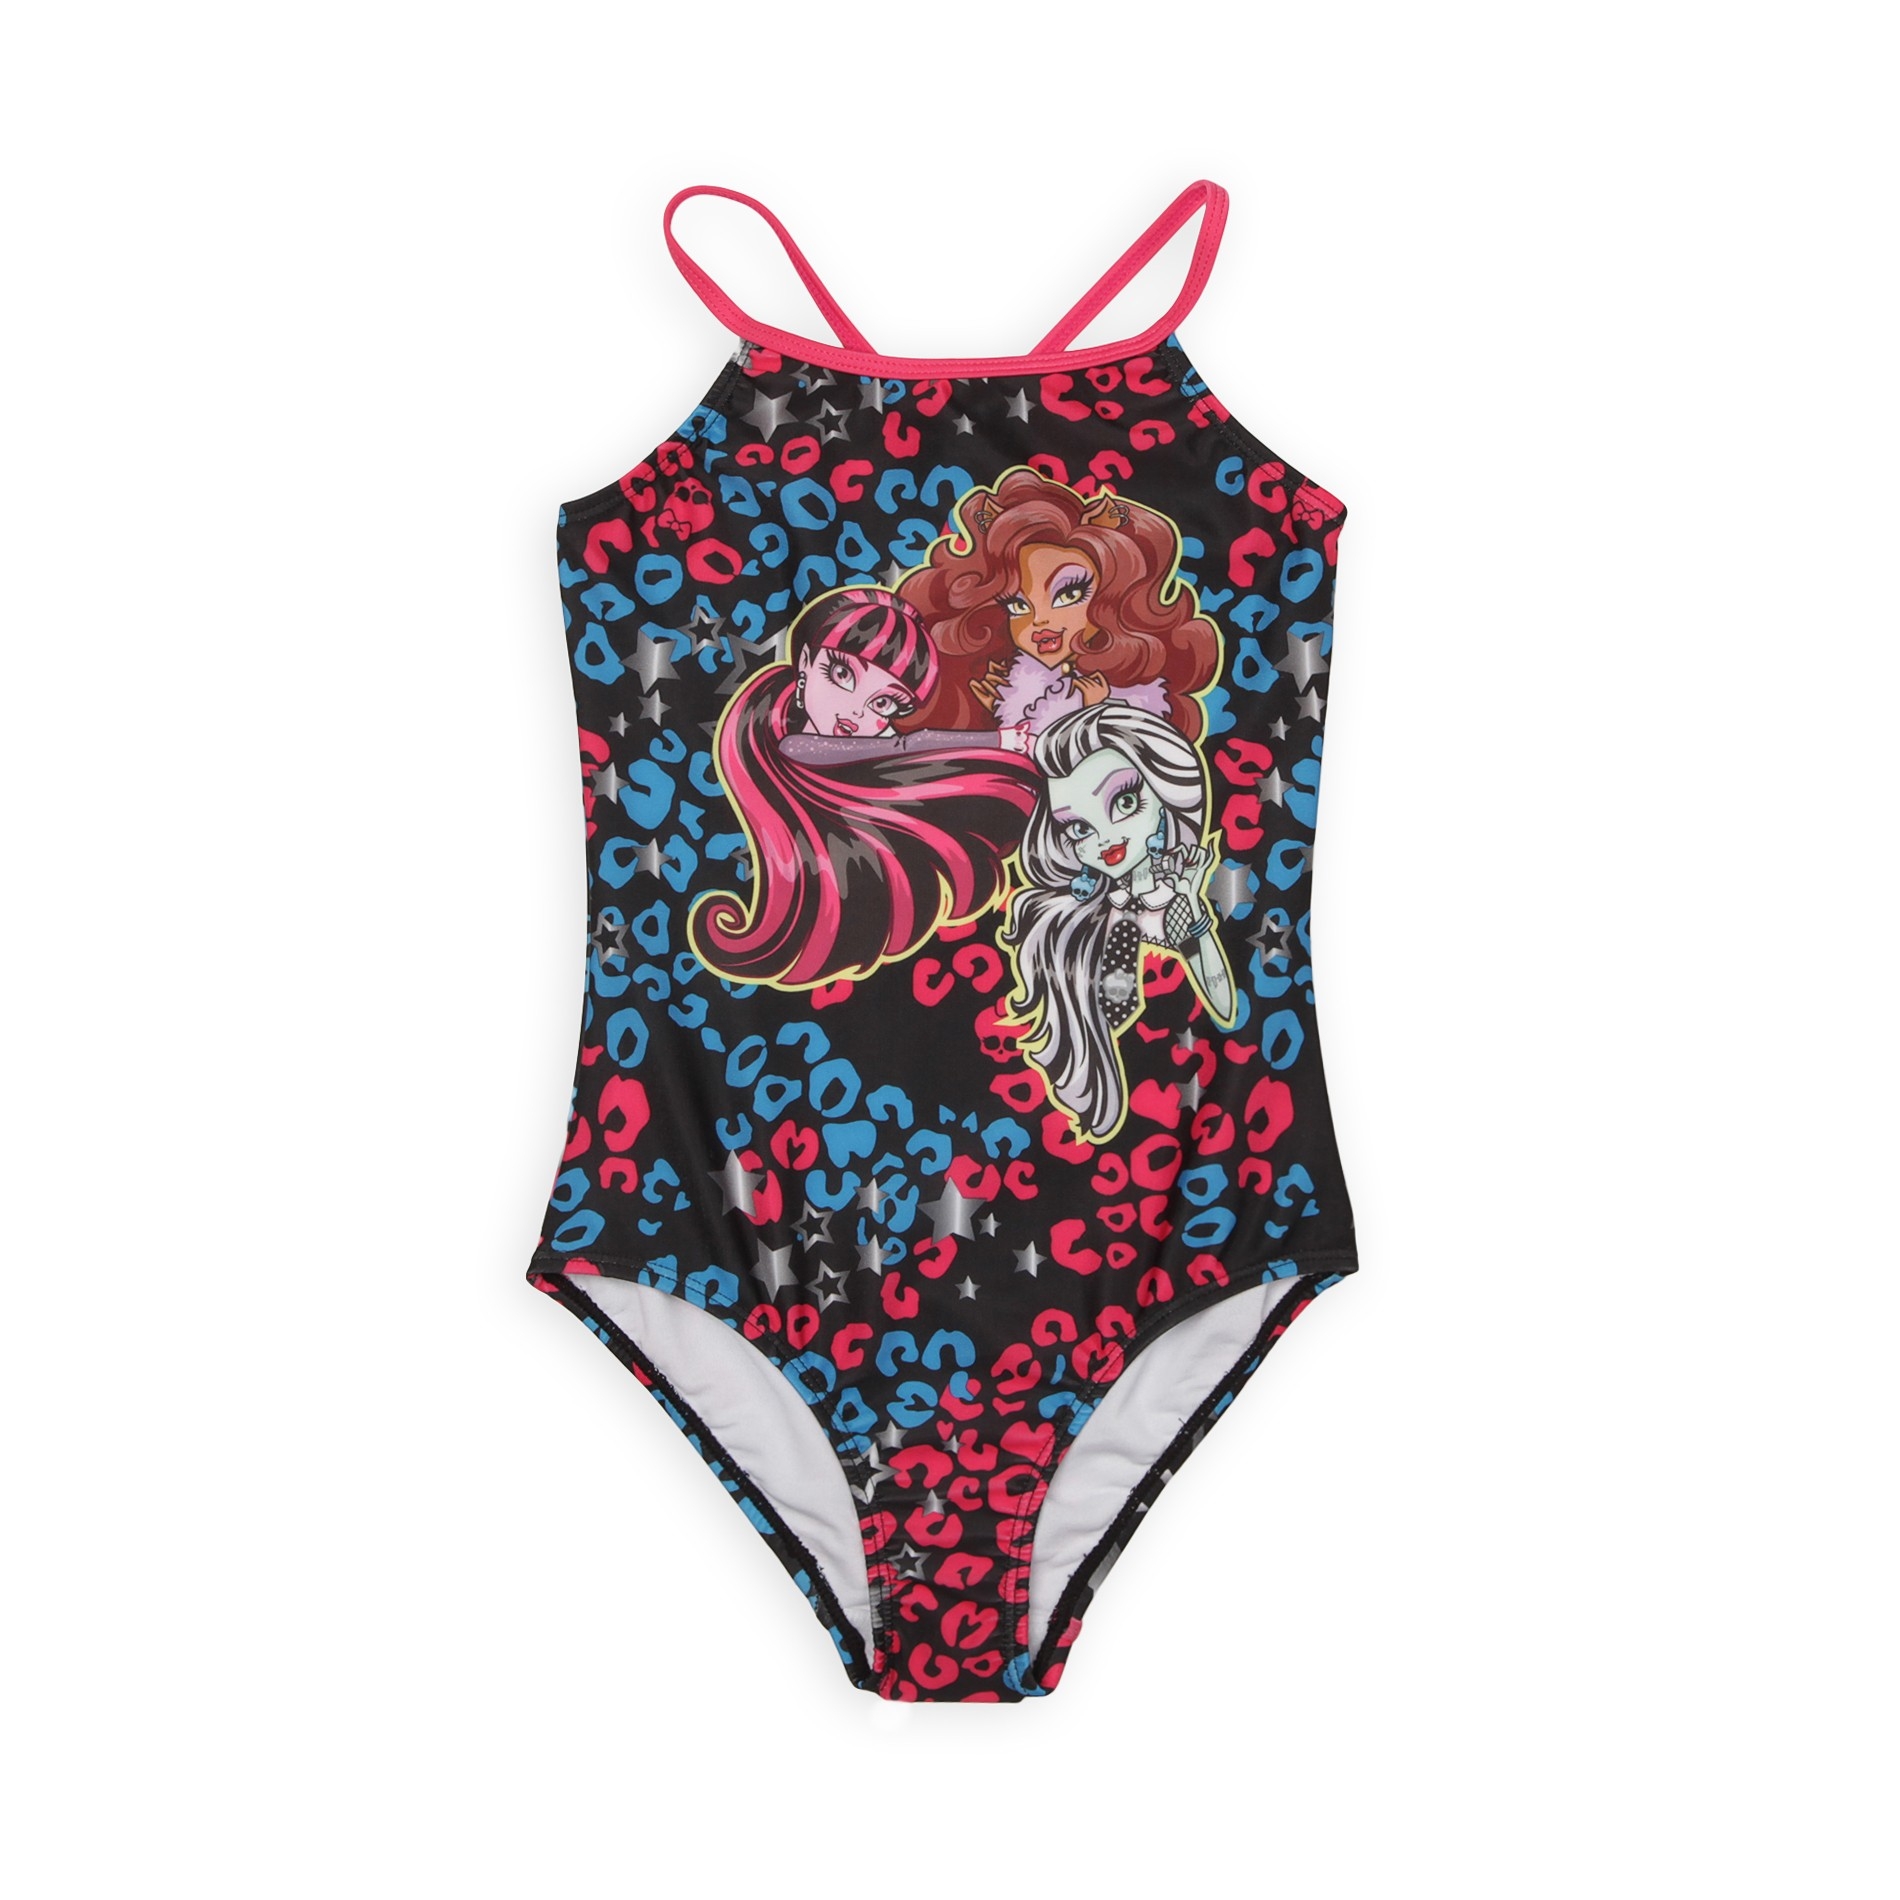 Monster High Girl's Swimsuit - Cheetah Print